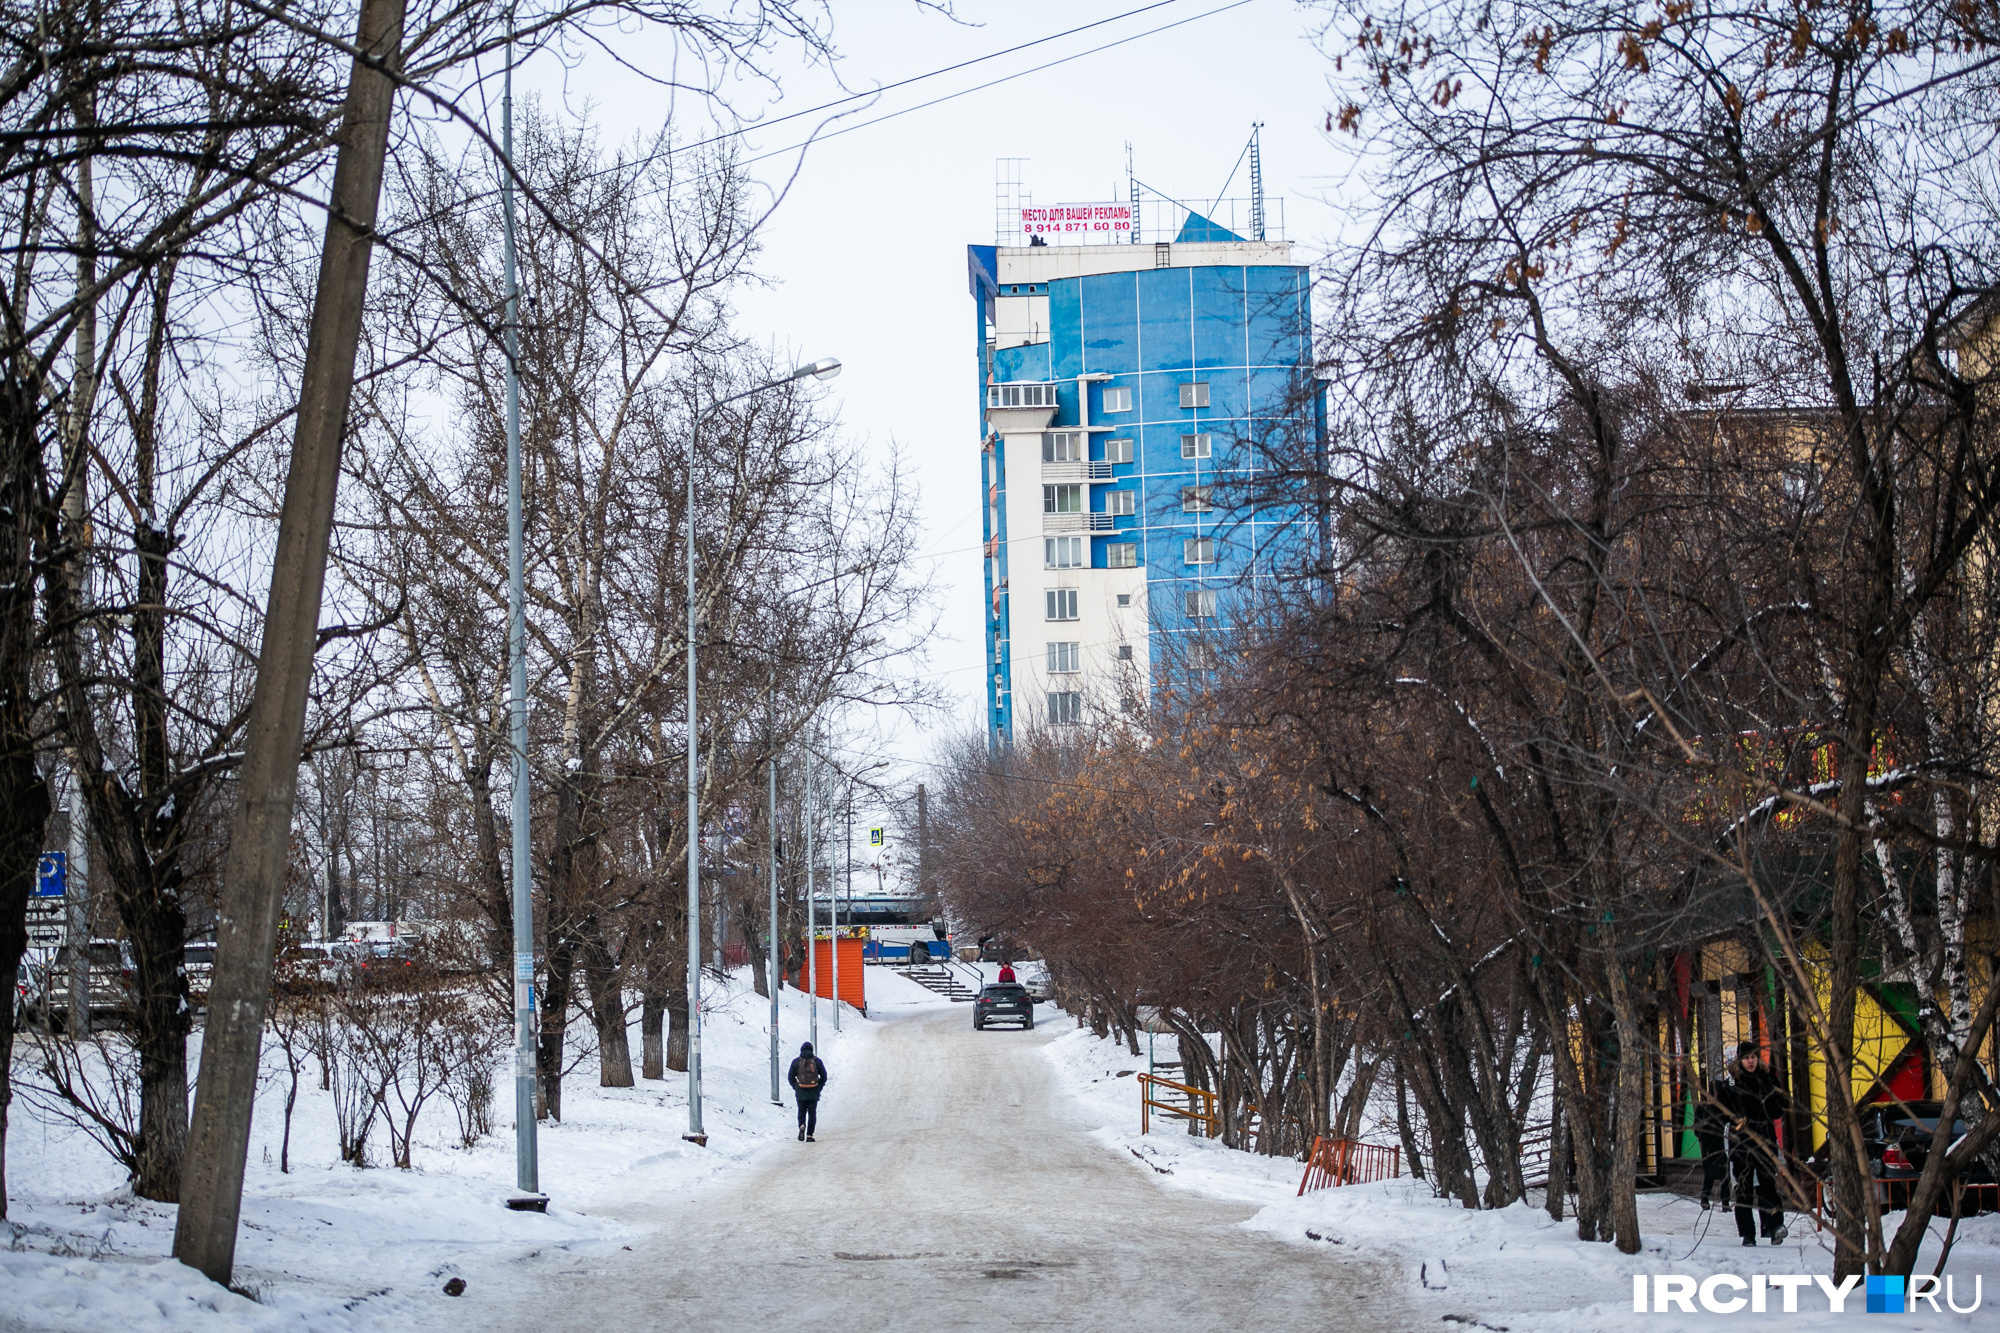 Дорога в горочку, мимо жилых пятиэтажек и общаг. И вот один из первых в Иркутске небоскребов